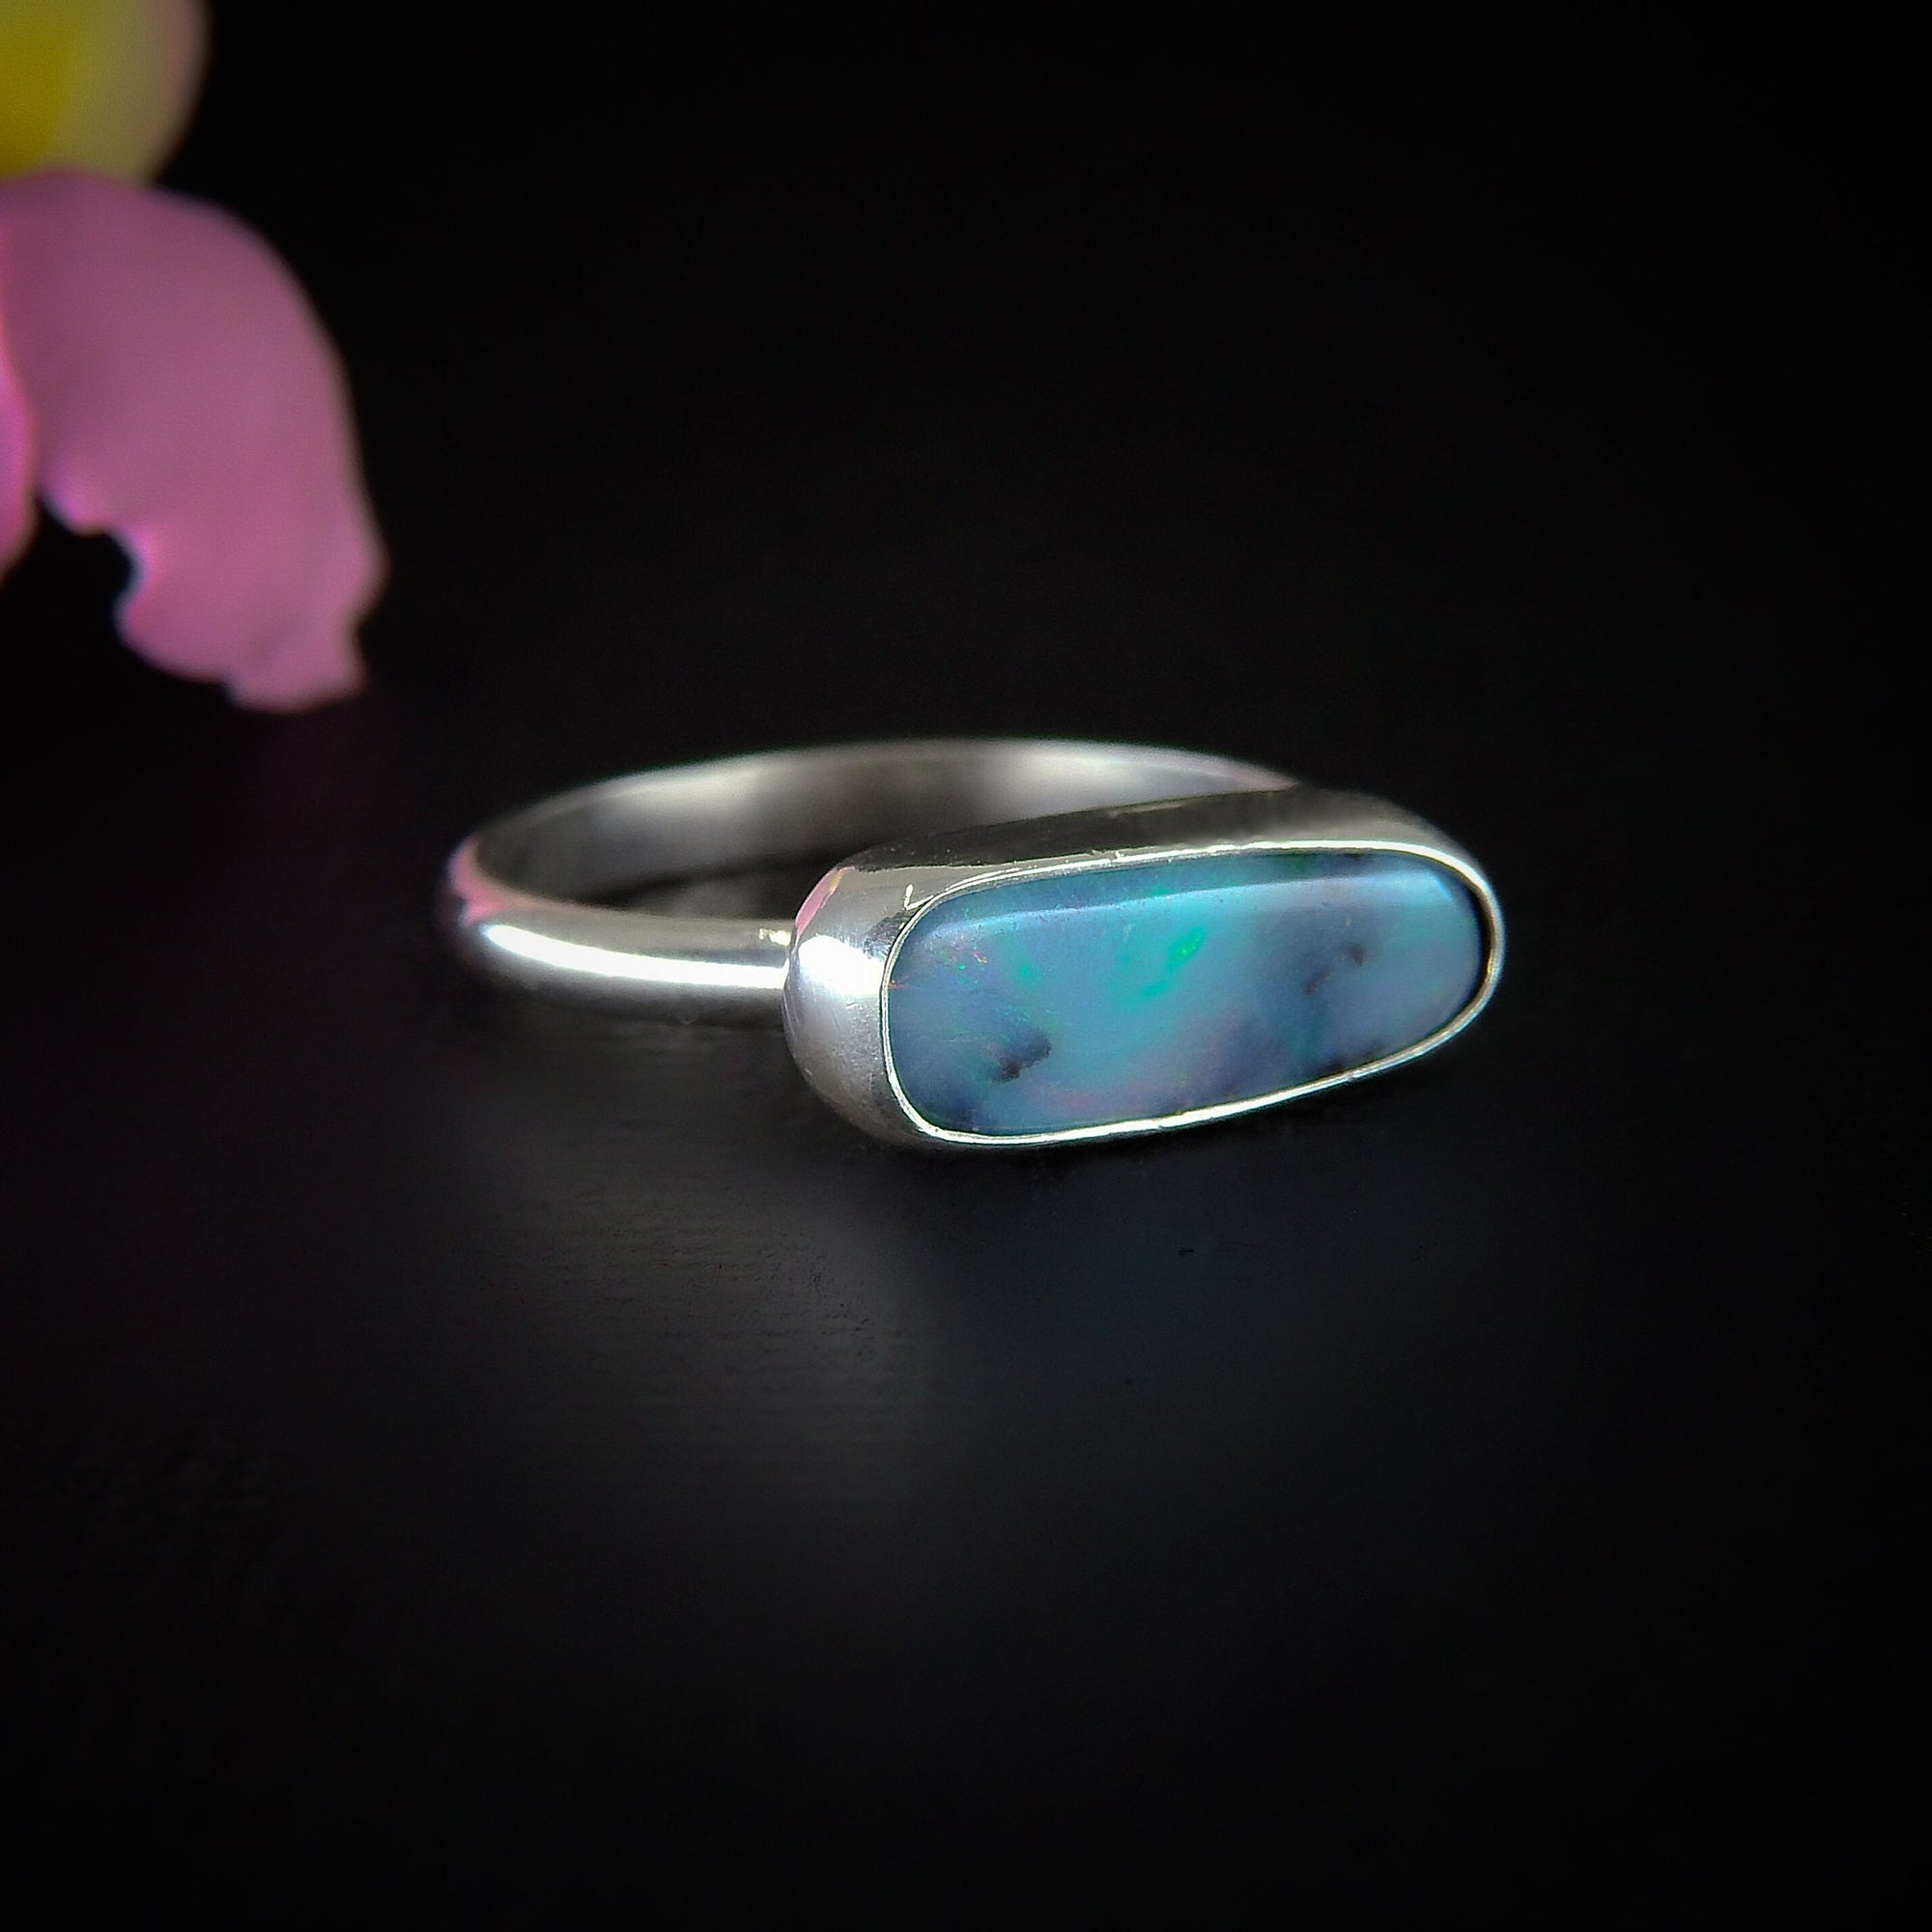 Australian Boulder Opal Ring - Size 8 - Sterling Silver - Lightning Ridge Opal Ring - Dainty Opal Jewelry -Solid Australian Opal Jewelry